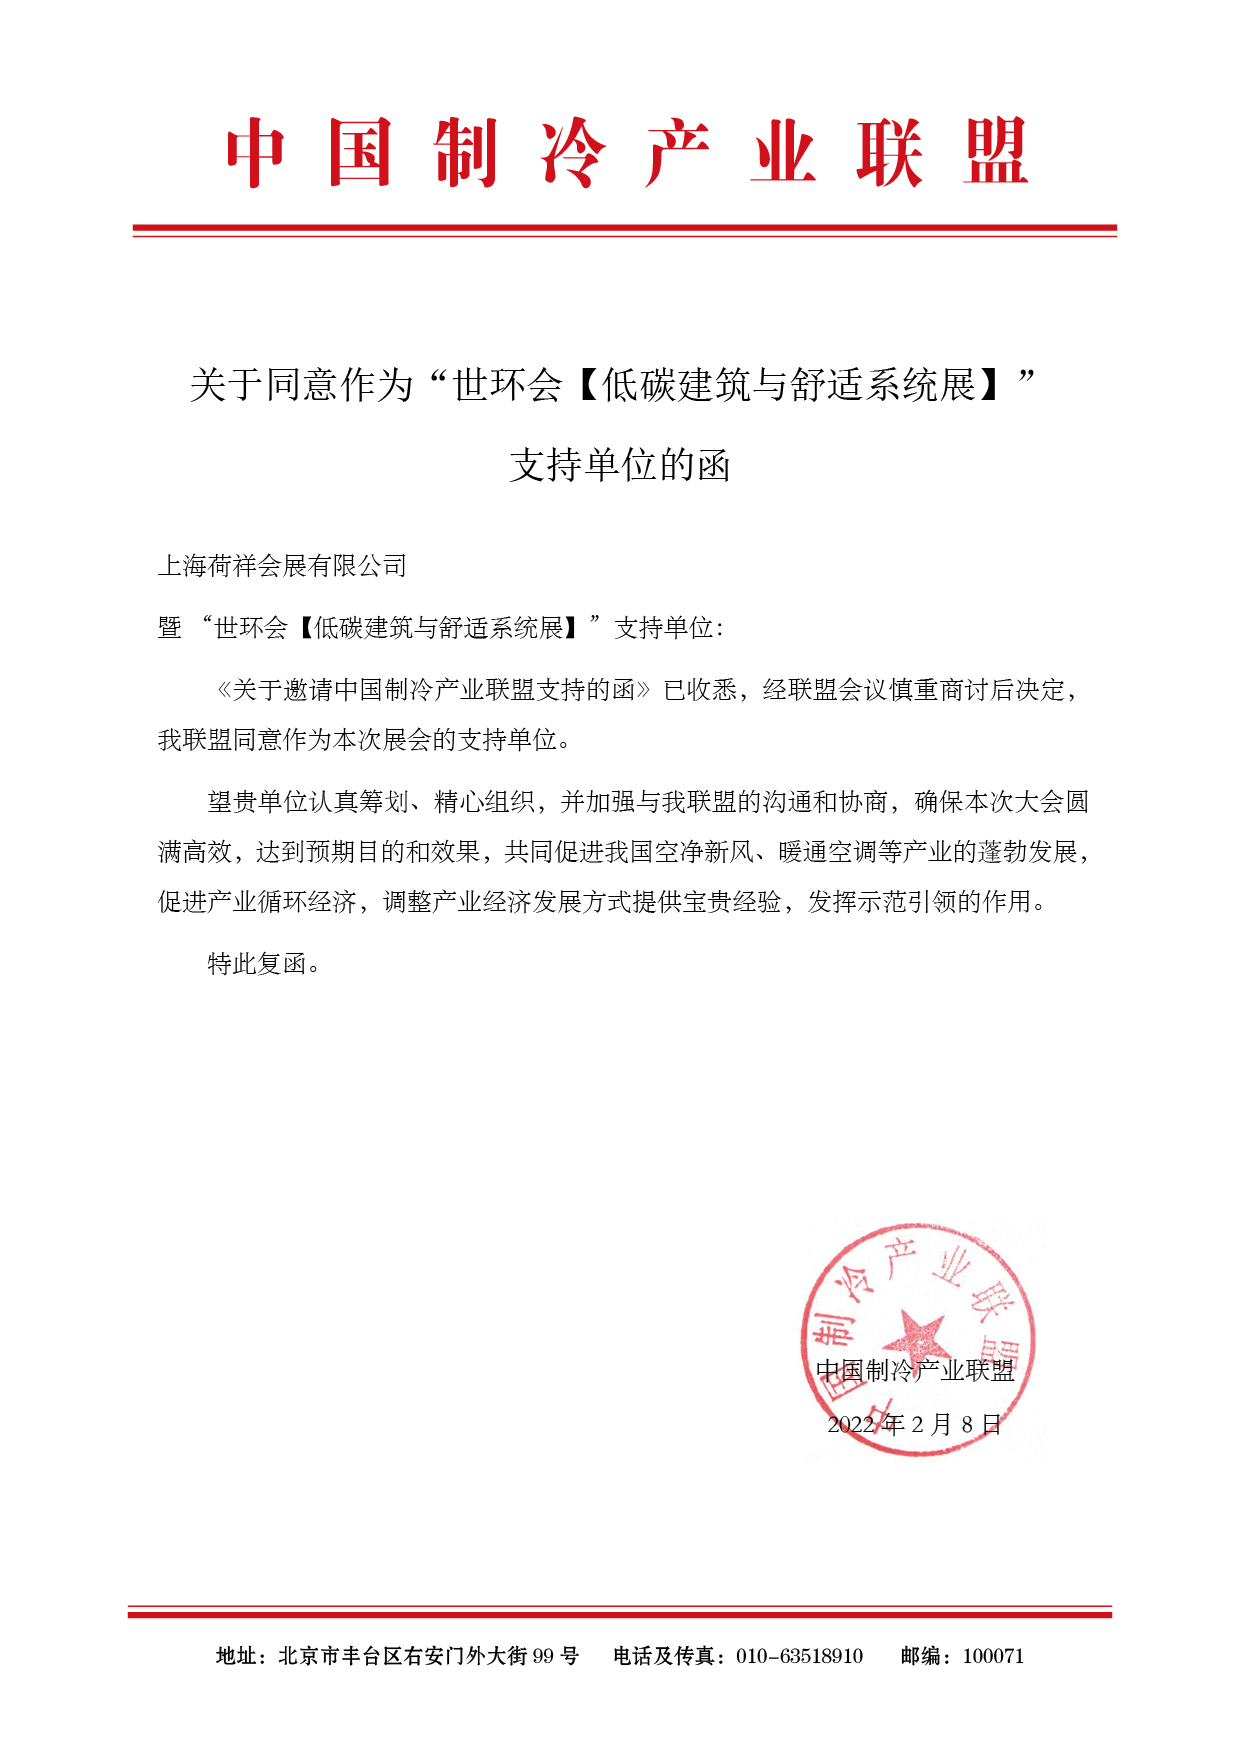 中国制冷产业联盟&中国电子节能技术协会成为“2022上海舒适系统展”支持单位-_上海舒适系统展